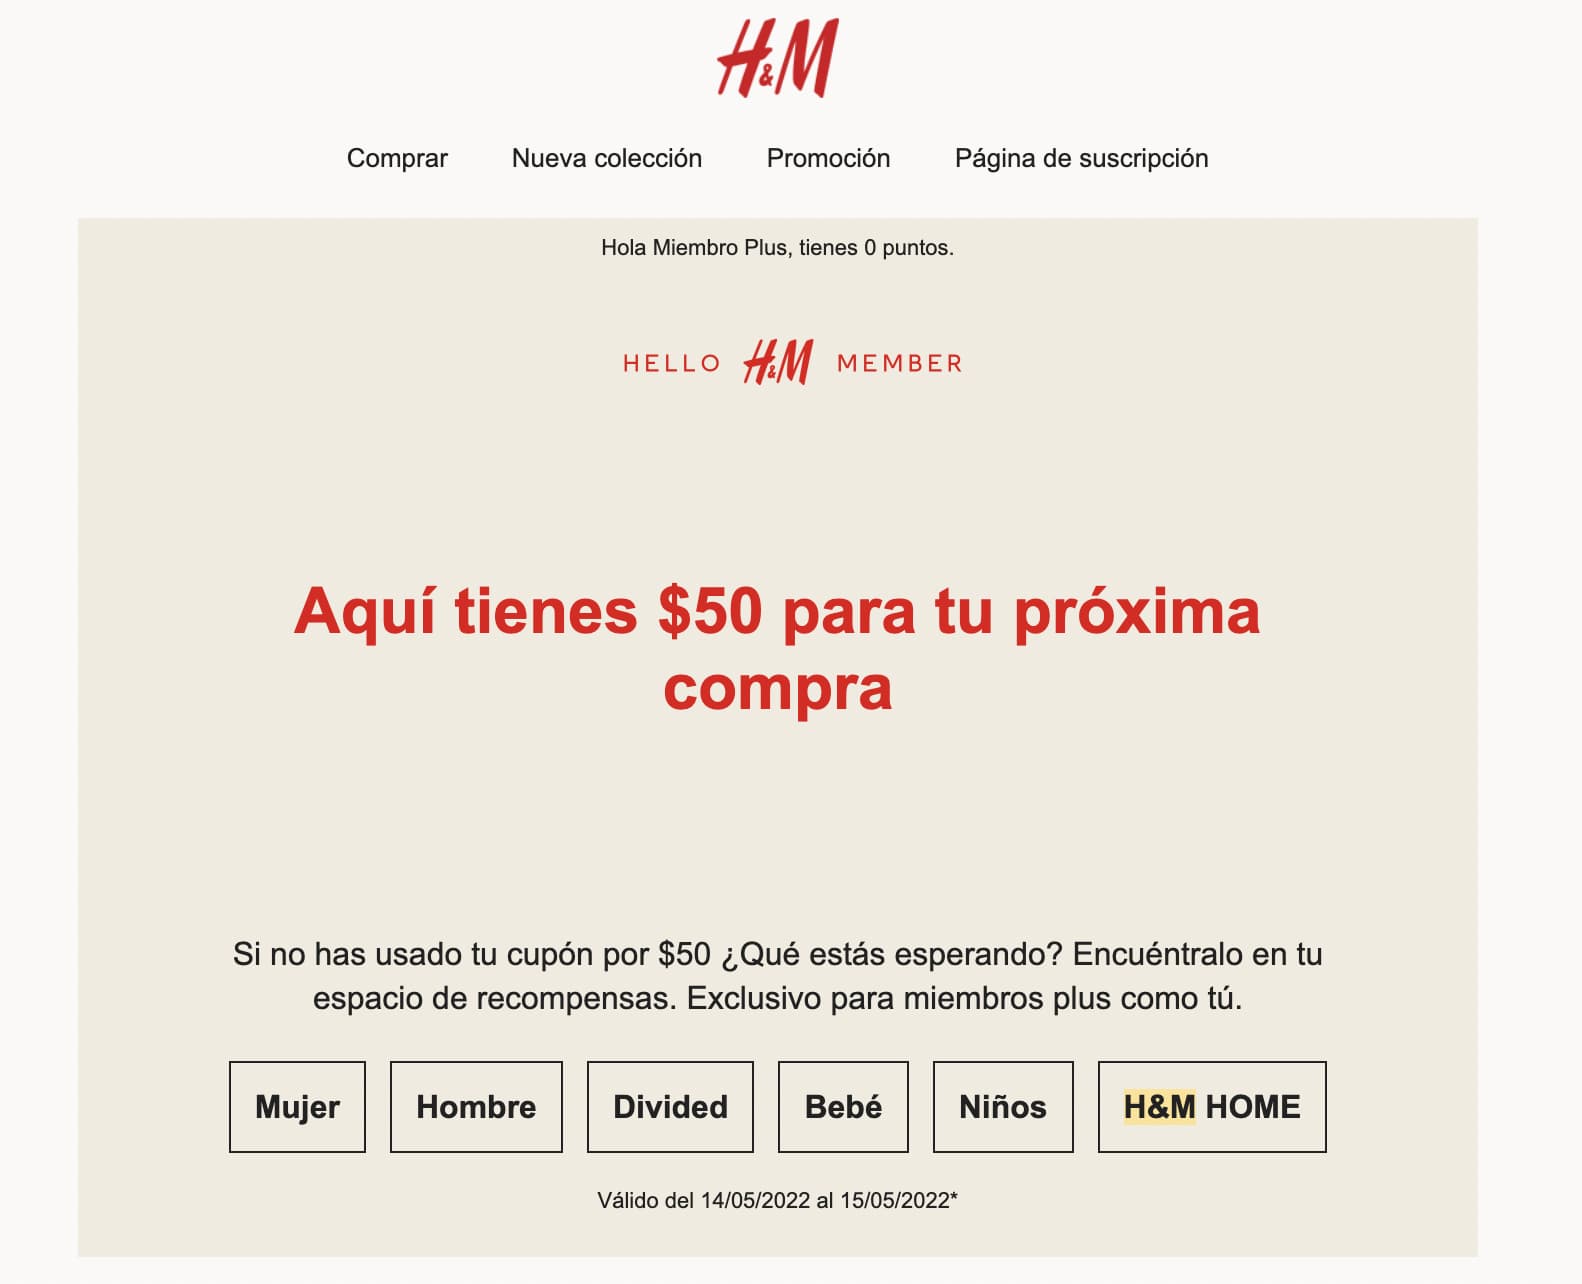 Cómo hacer una promoción con ejemplo de H&M